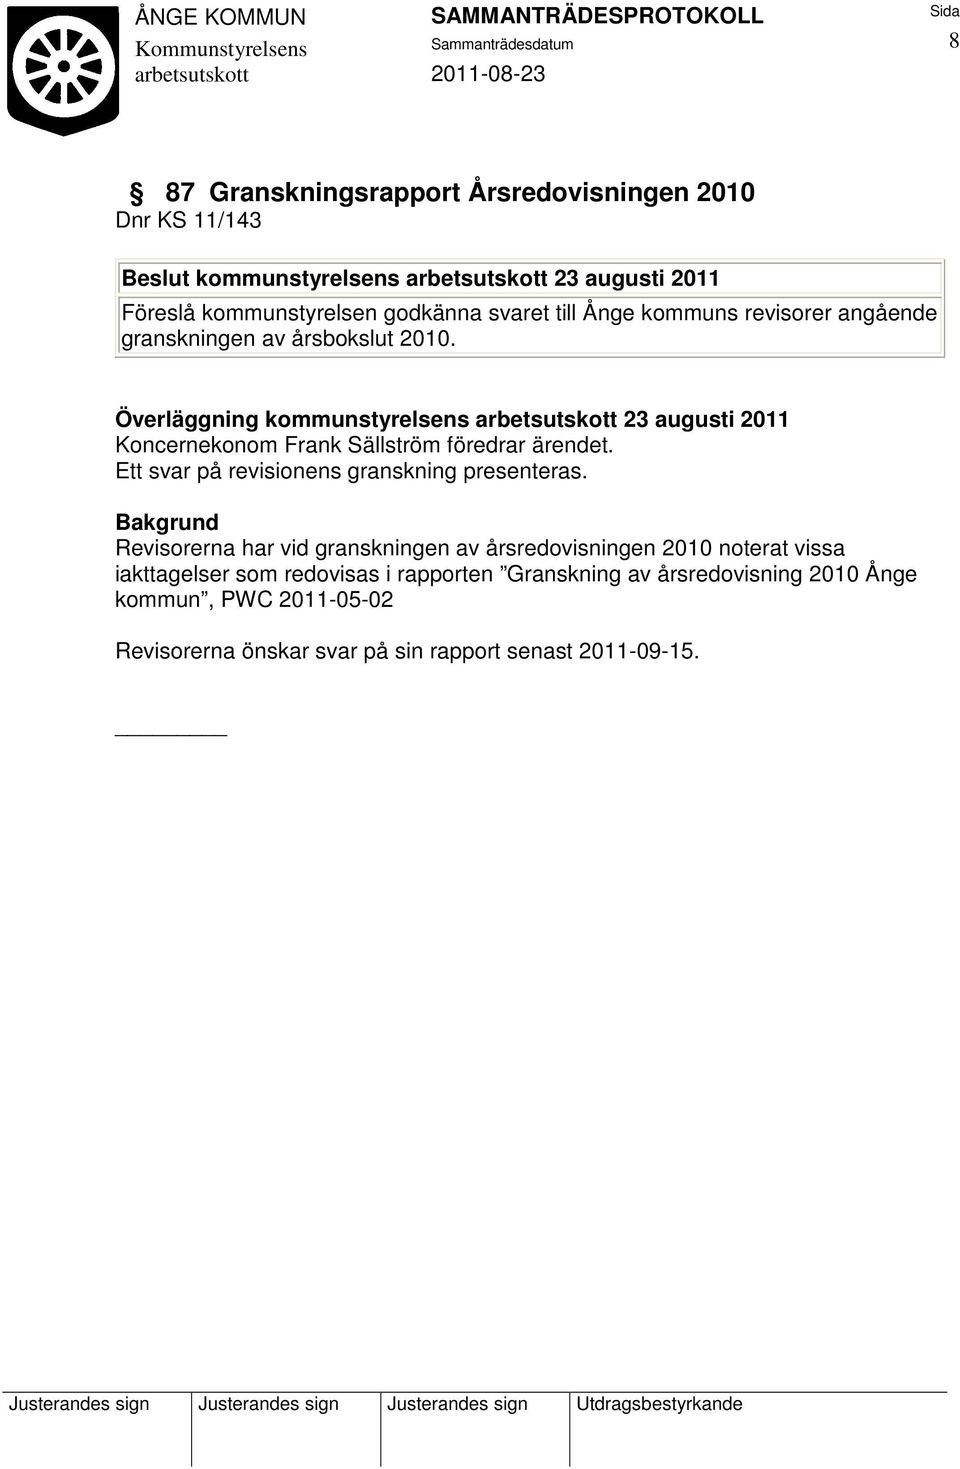 Överläggning kommunstyrelsens 23 augusti 2011 Koncernekonom Frank Sällström föredrar ärendet. Ett svar på revisionens granskning presenteras.